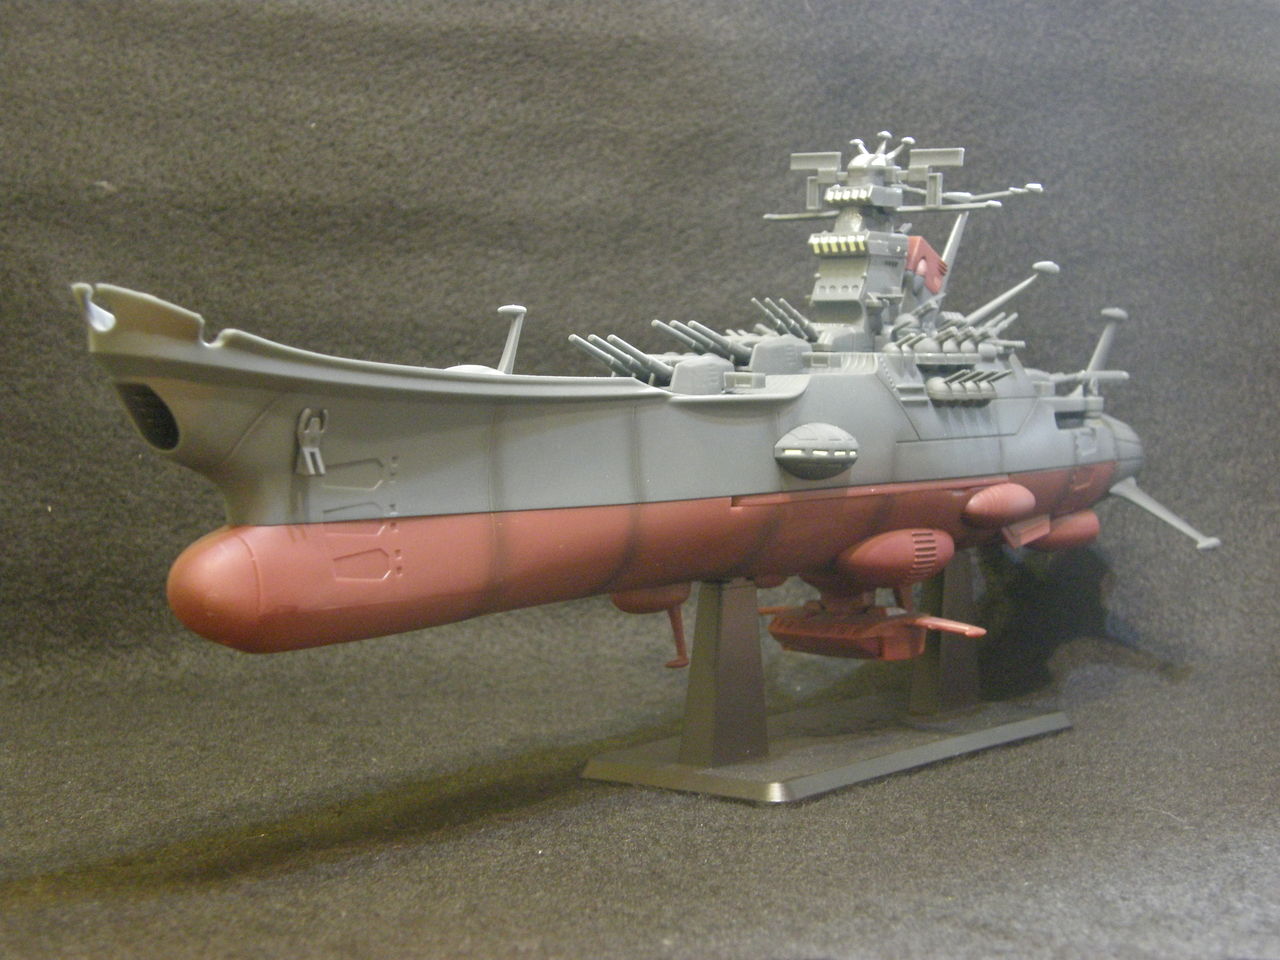 宇宙戦艦ヤマトスーパーメカニクス 1/665 フィギュア プライズ タイトー